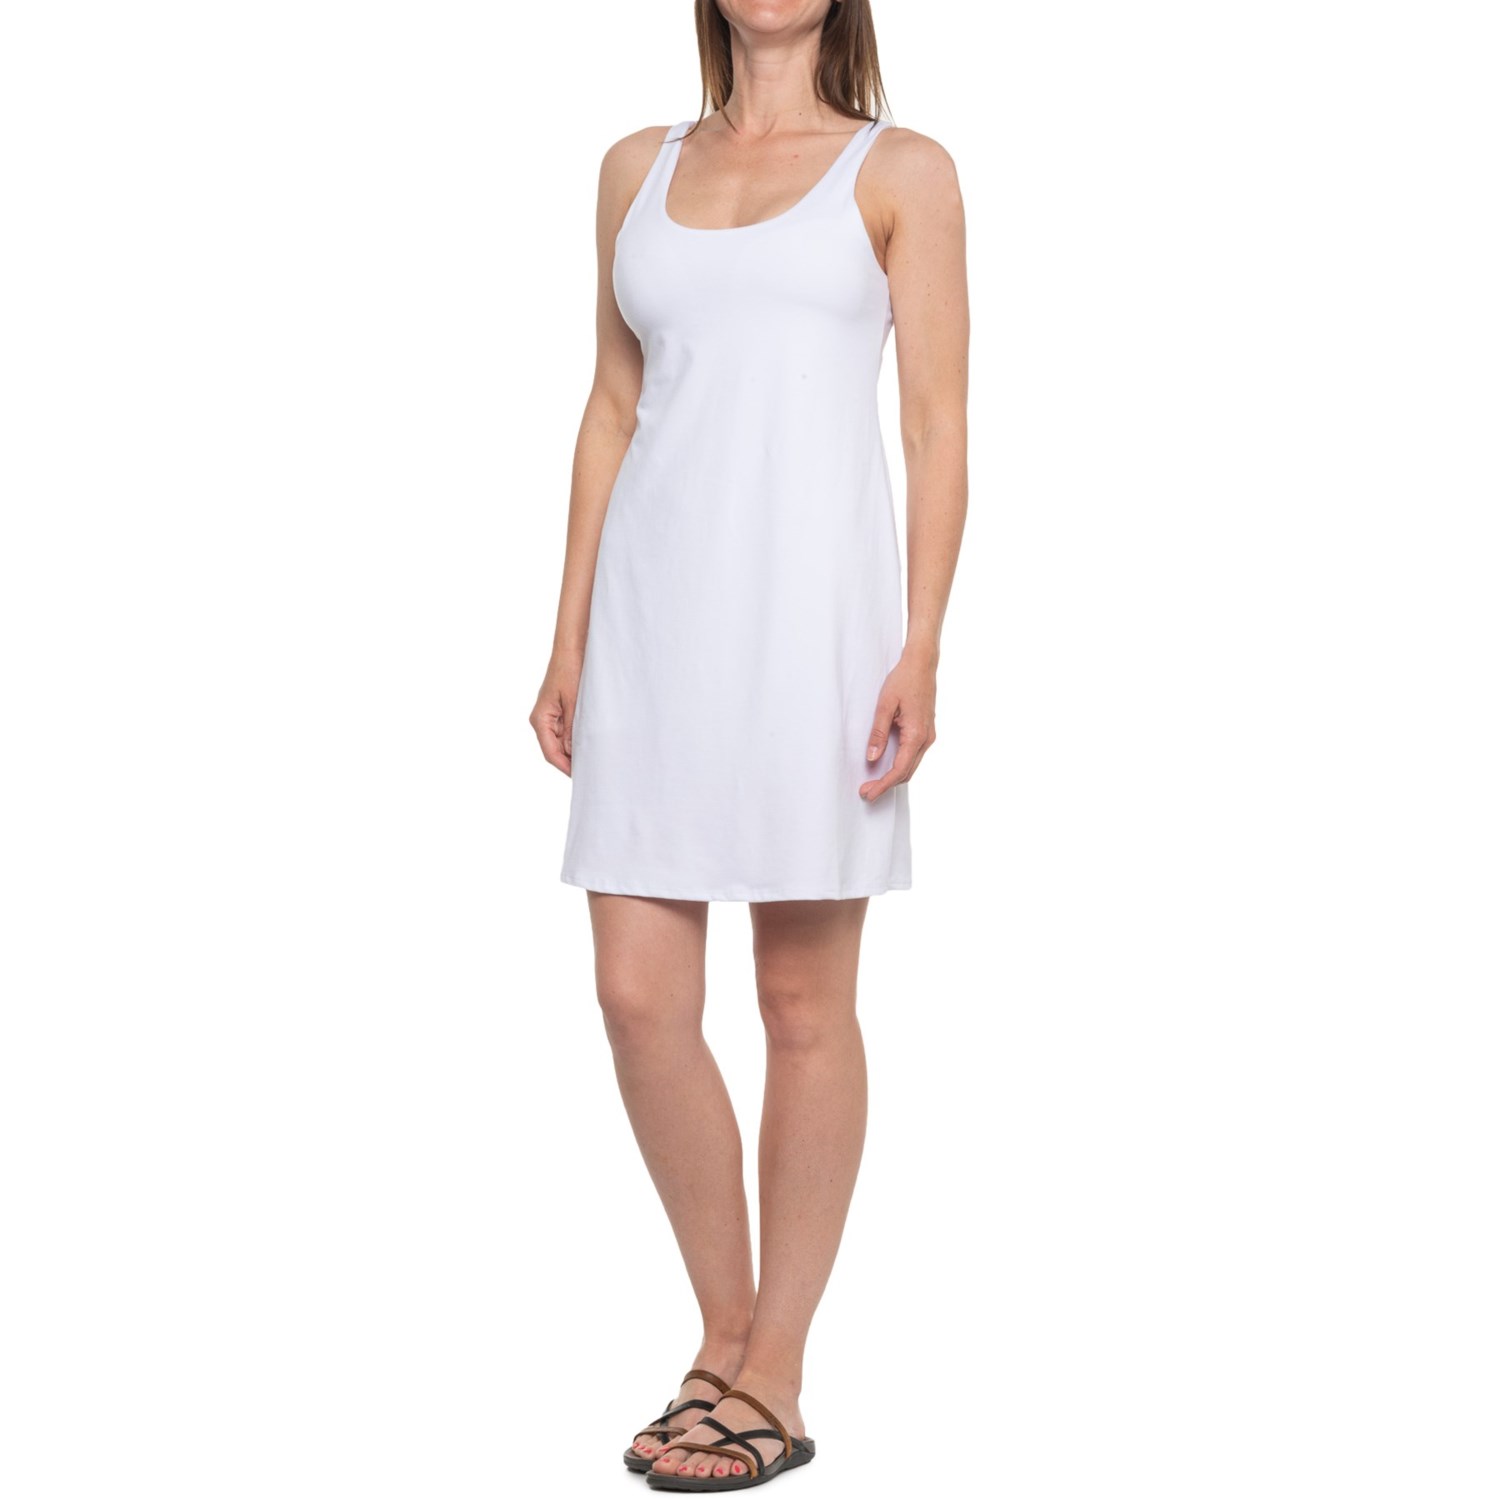 Kyodan Moss Jersey Shelf Bra Dress (For Women) - Save 60%